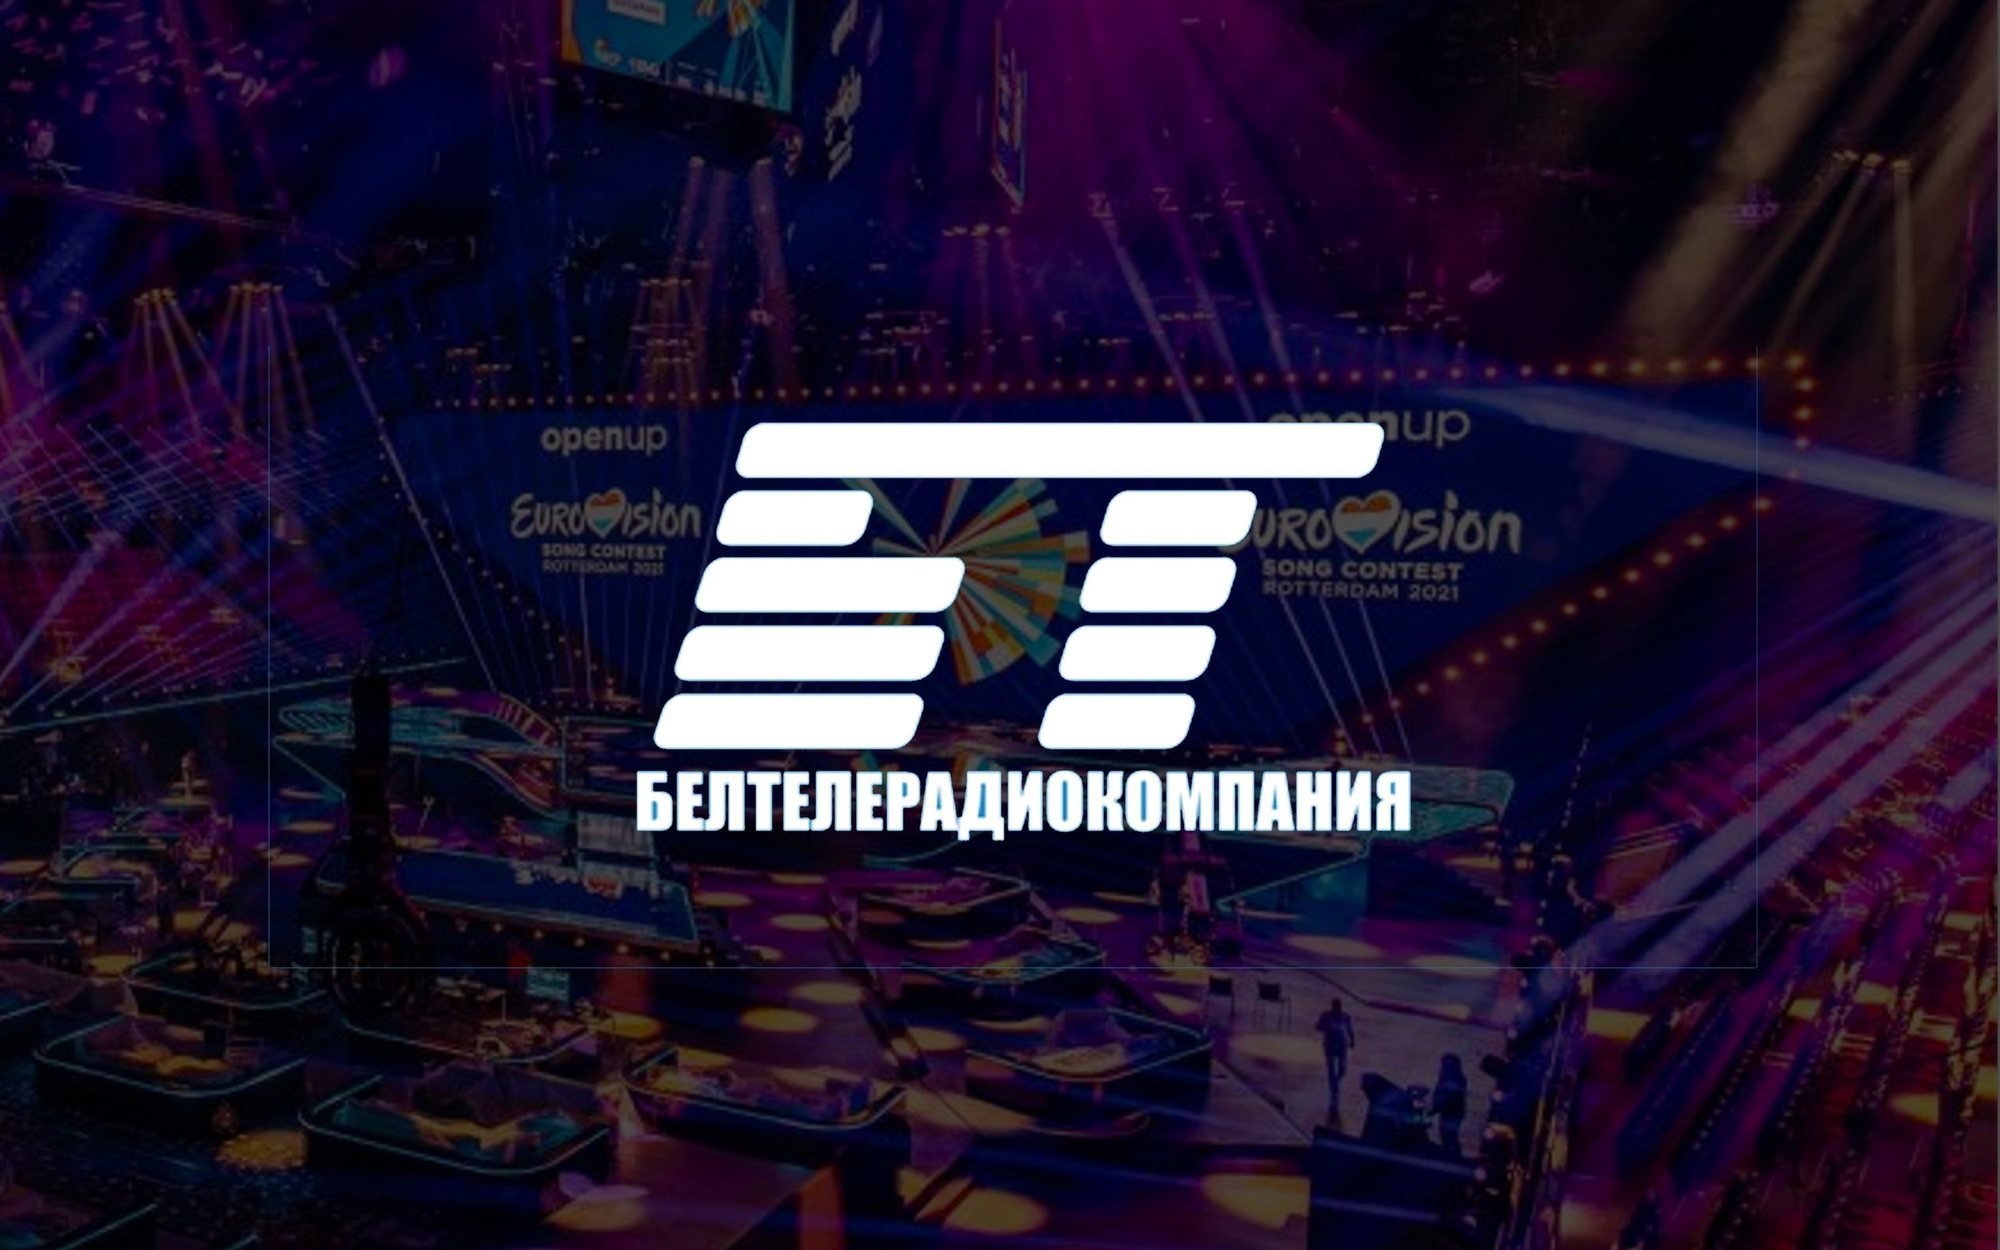 La televisión pública de Bielorrusia es suspendida como miembro de la UER por ir contra las libertades